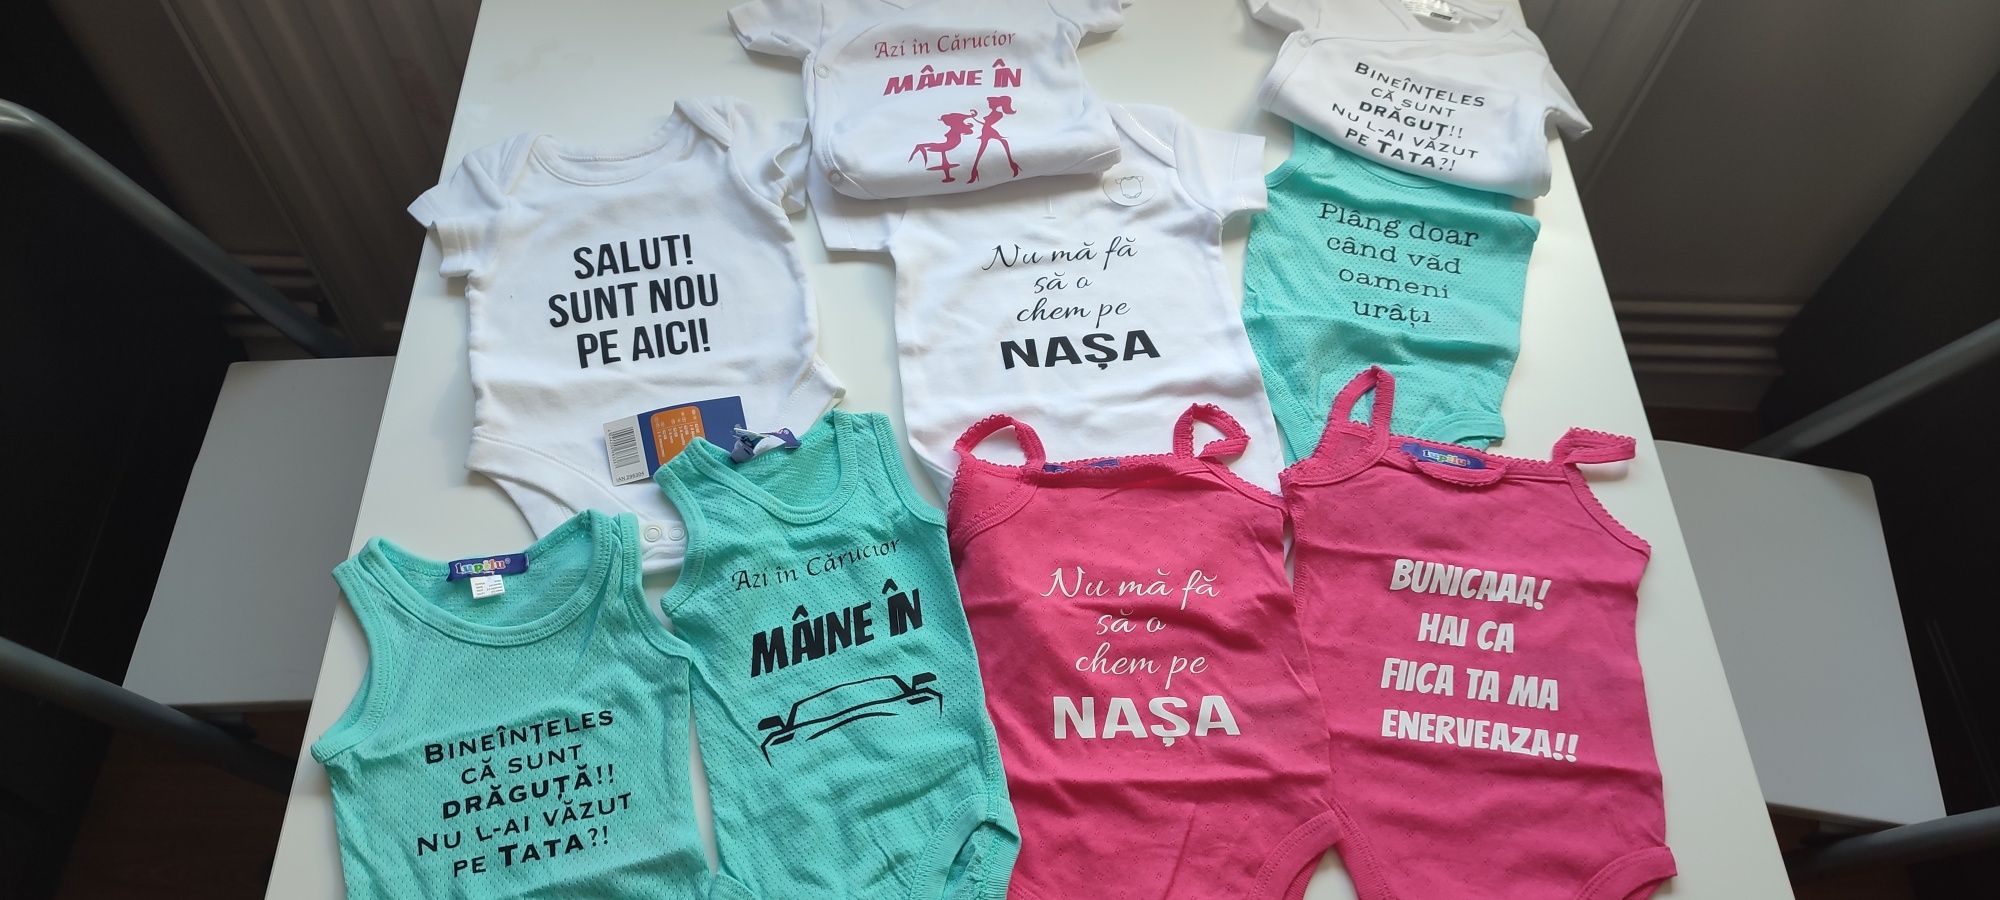 Bodyuri personalizate pentru bebeluși diferite mărimi